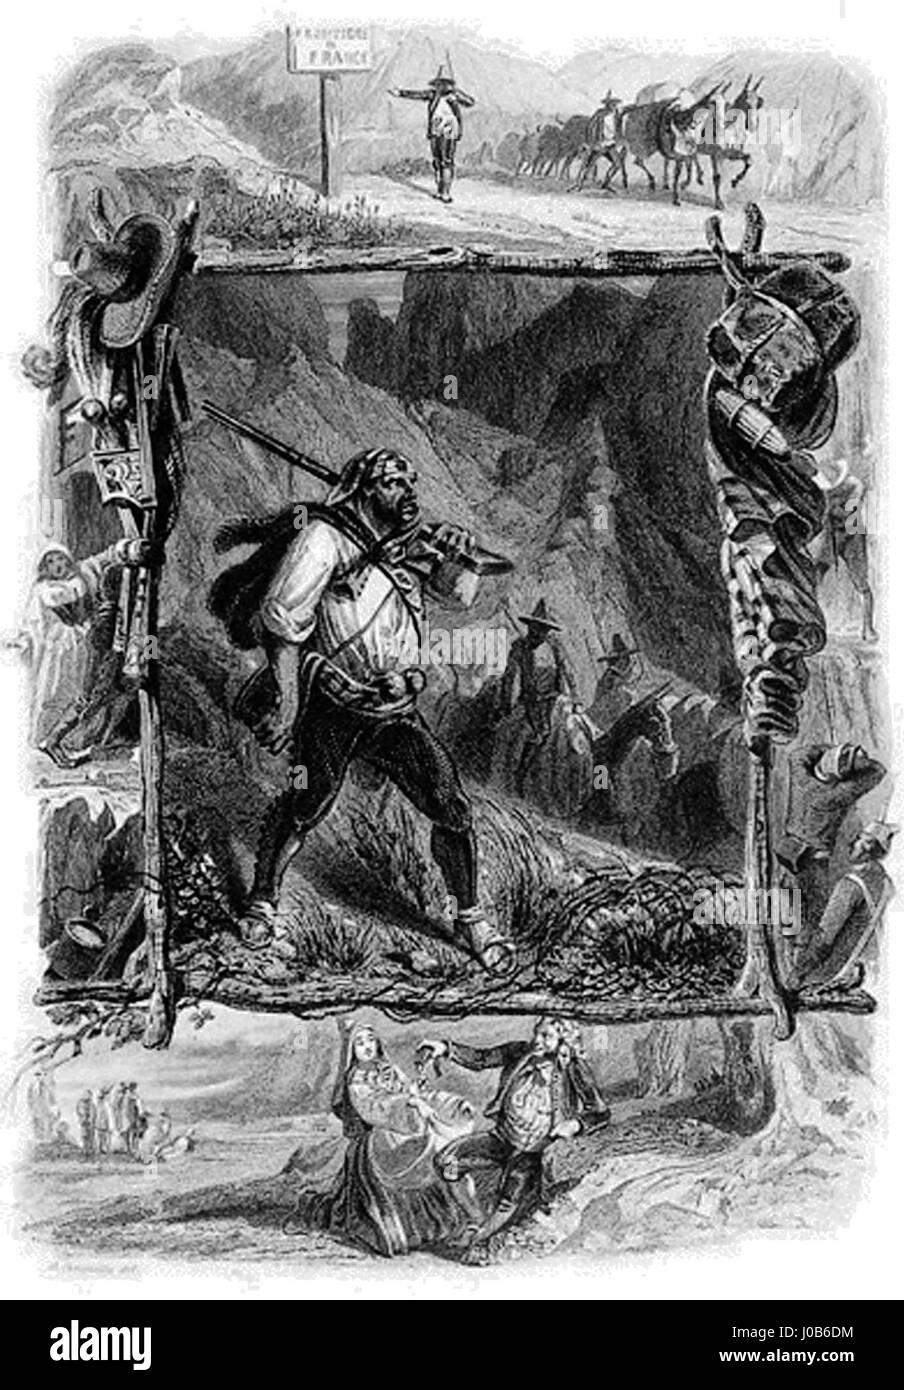 Octave Penguilly L'Haridon, Les contrebandiers, lithographie, vers 1850 (image extraite de la revue Les feuilles du pin à crochets, n° 7, p. 4 Stock Photo